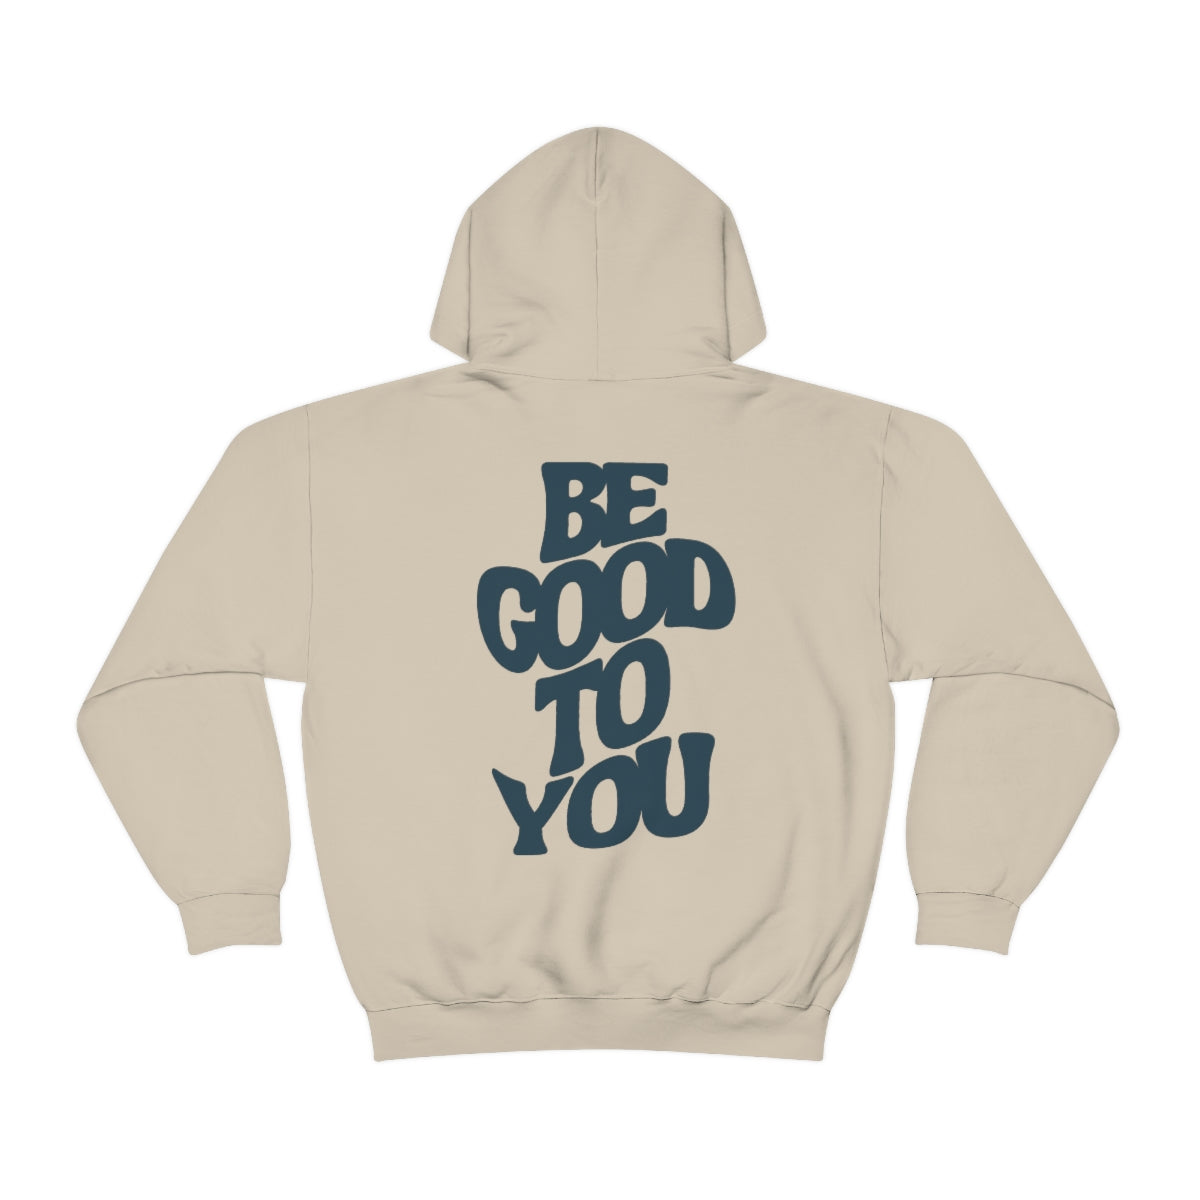 Be Good To You Hooded Sweatshirt